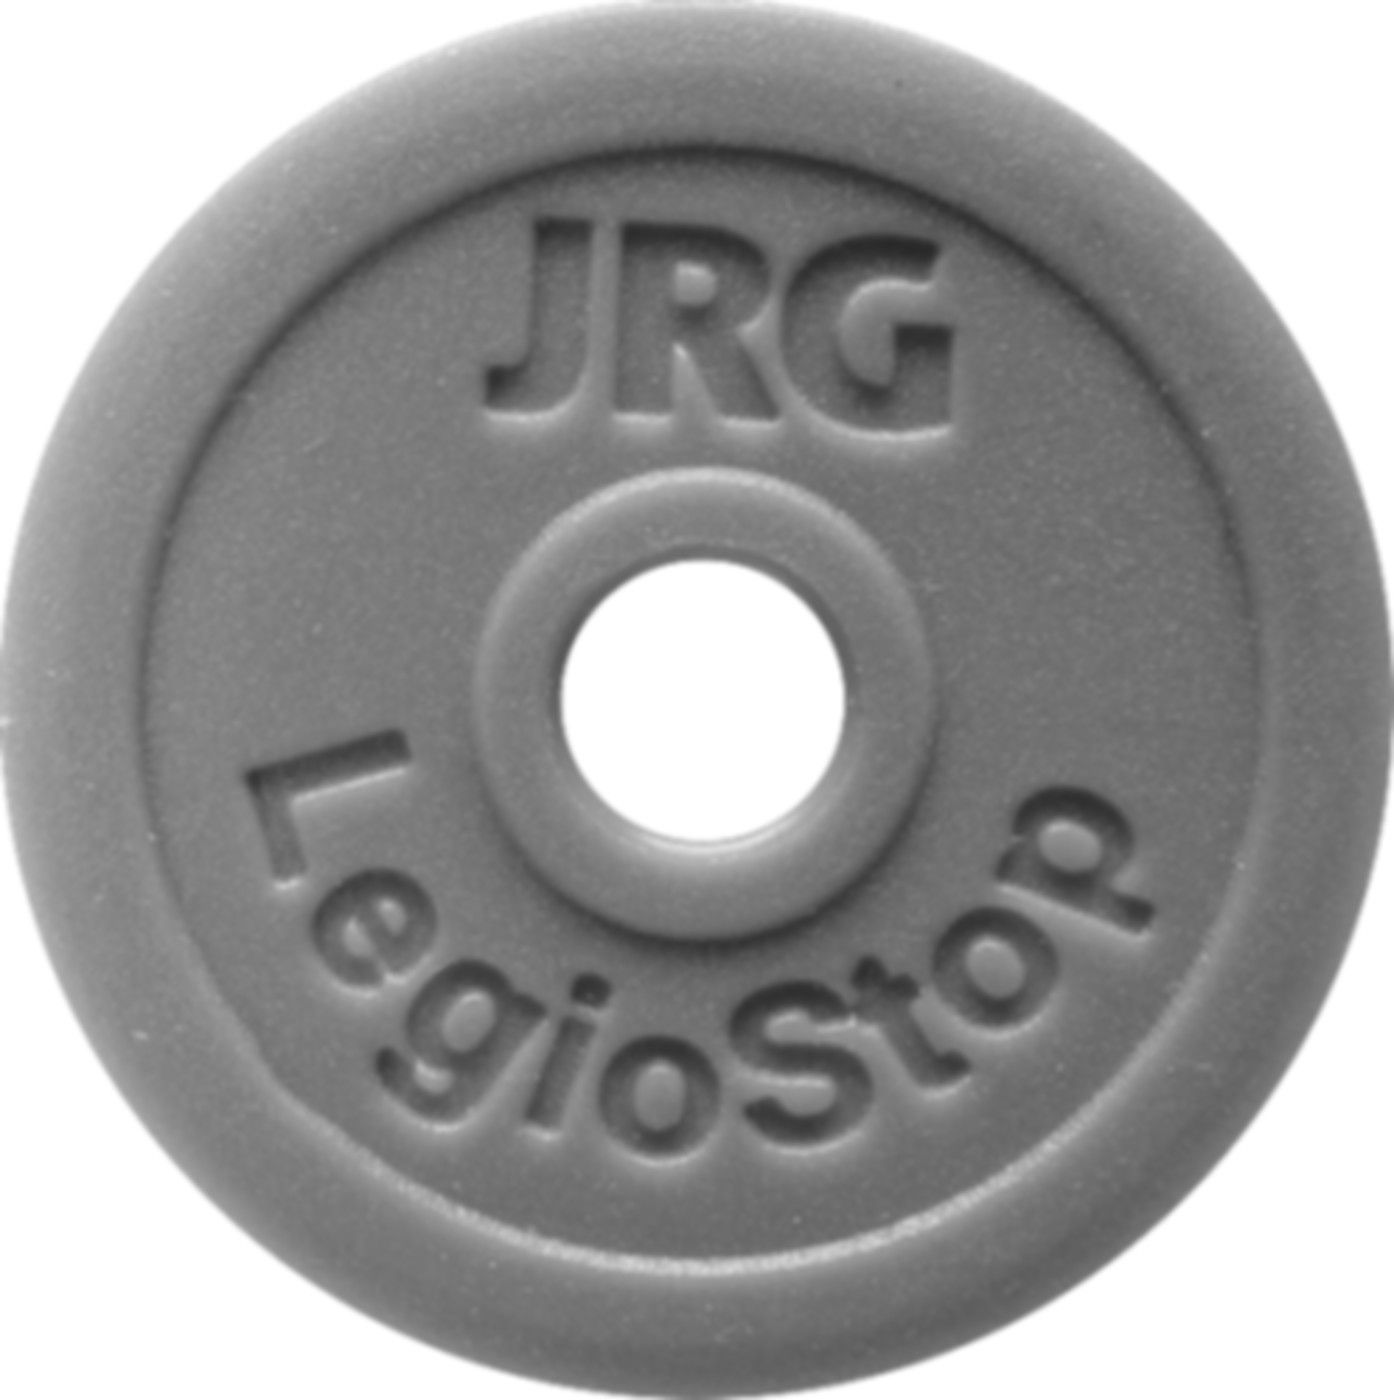 Markierschild Grün d 70mm 8501.102 für Oberteil LegioStop 11/4" - JRG Armaturen